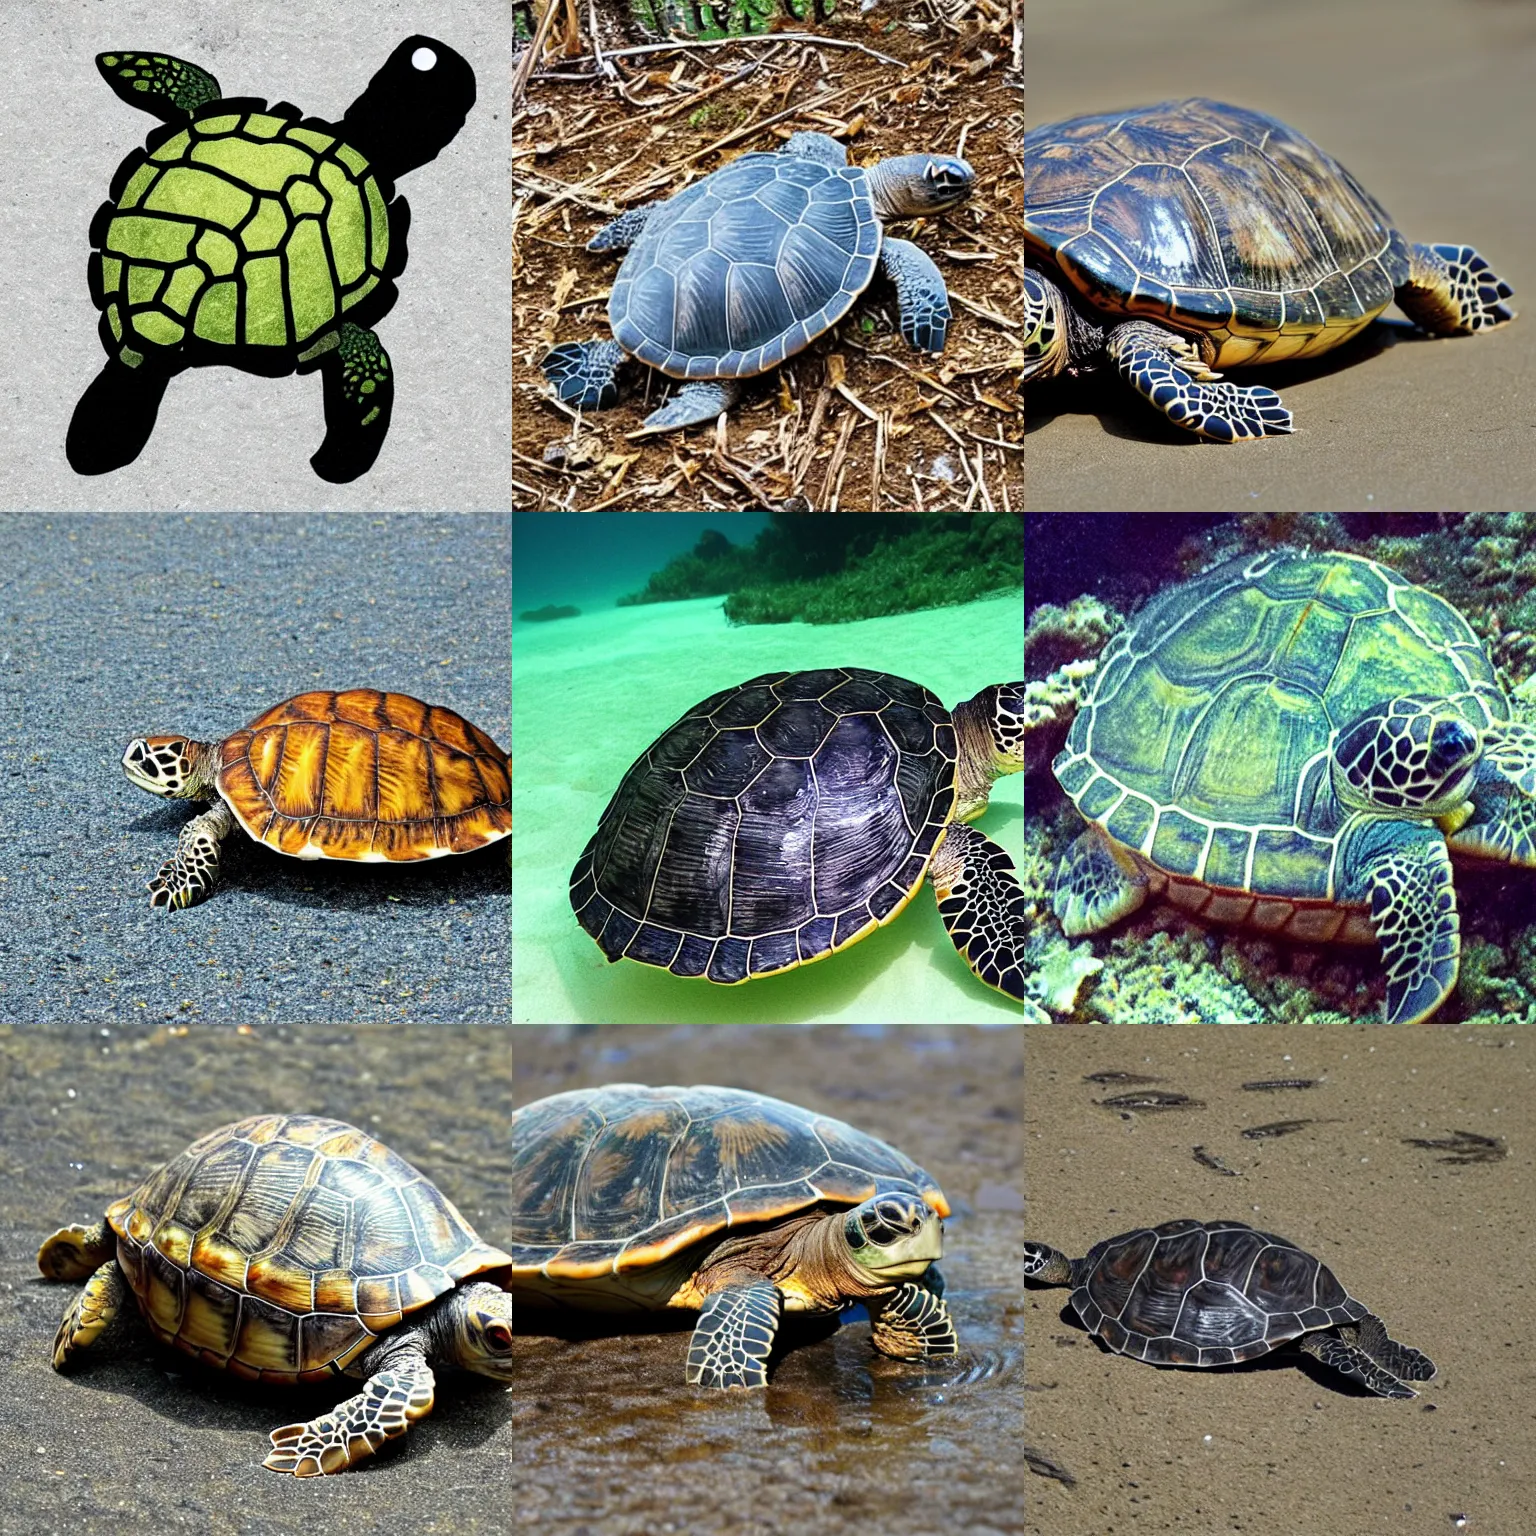 Prompt: <turtle>turtle</turtle>